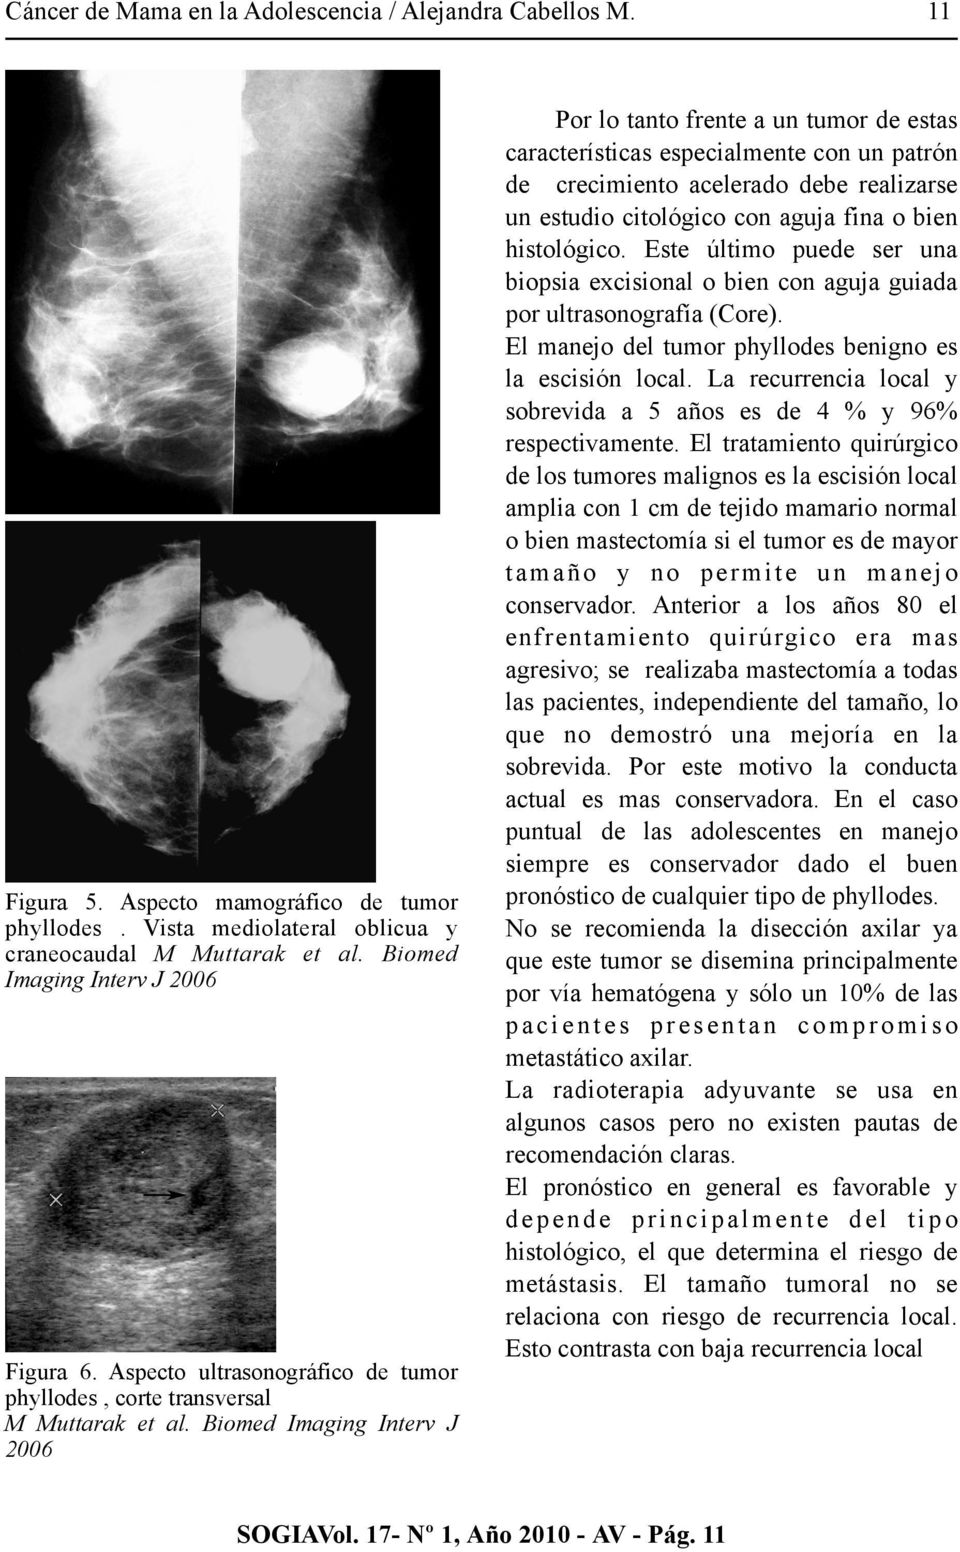 Biomed Imaging Interv J 2006 11 Por lo tanto frente a un tumor de estas características especialmente con un patrón de crecimiento acelerado debe realizarse un estudio citológico con aguja fina o